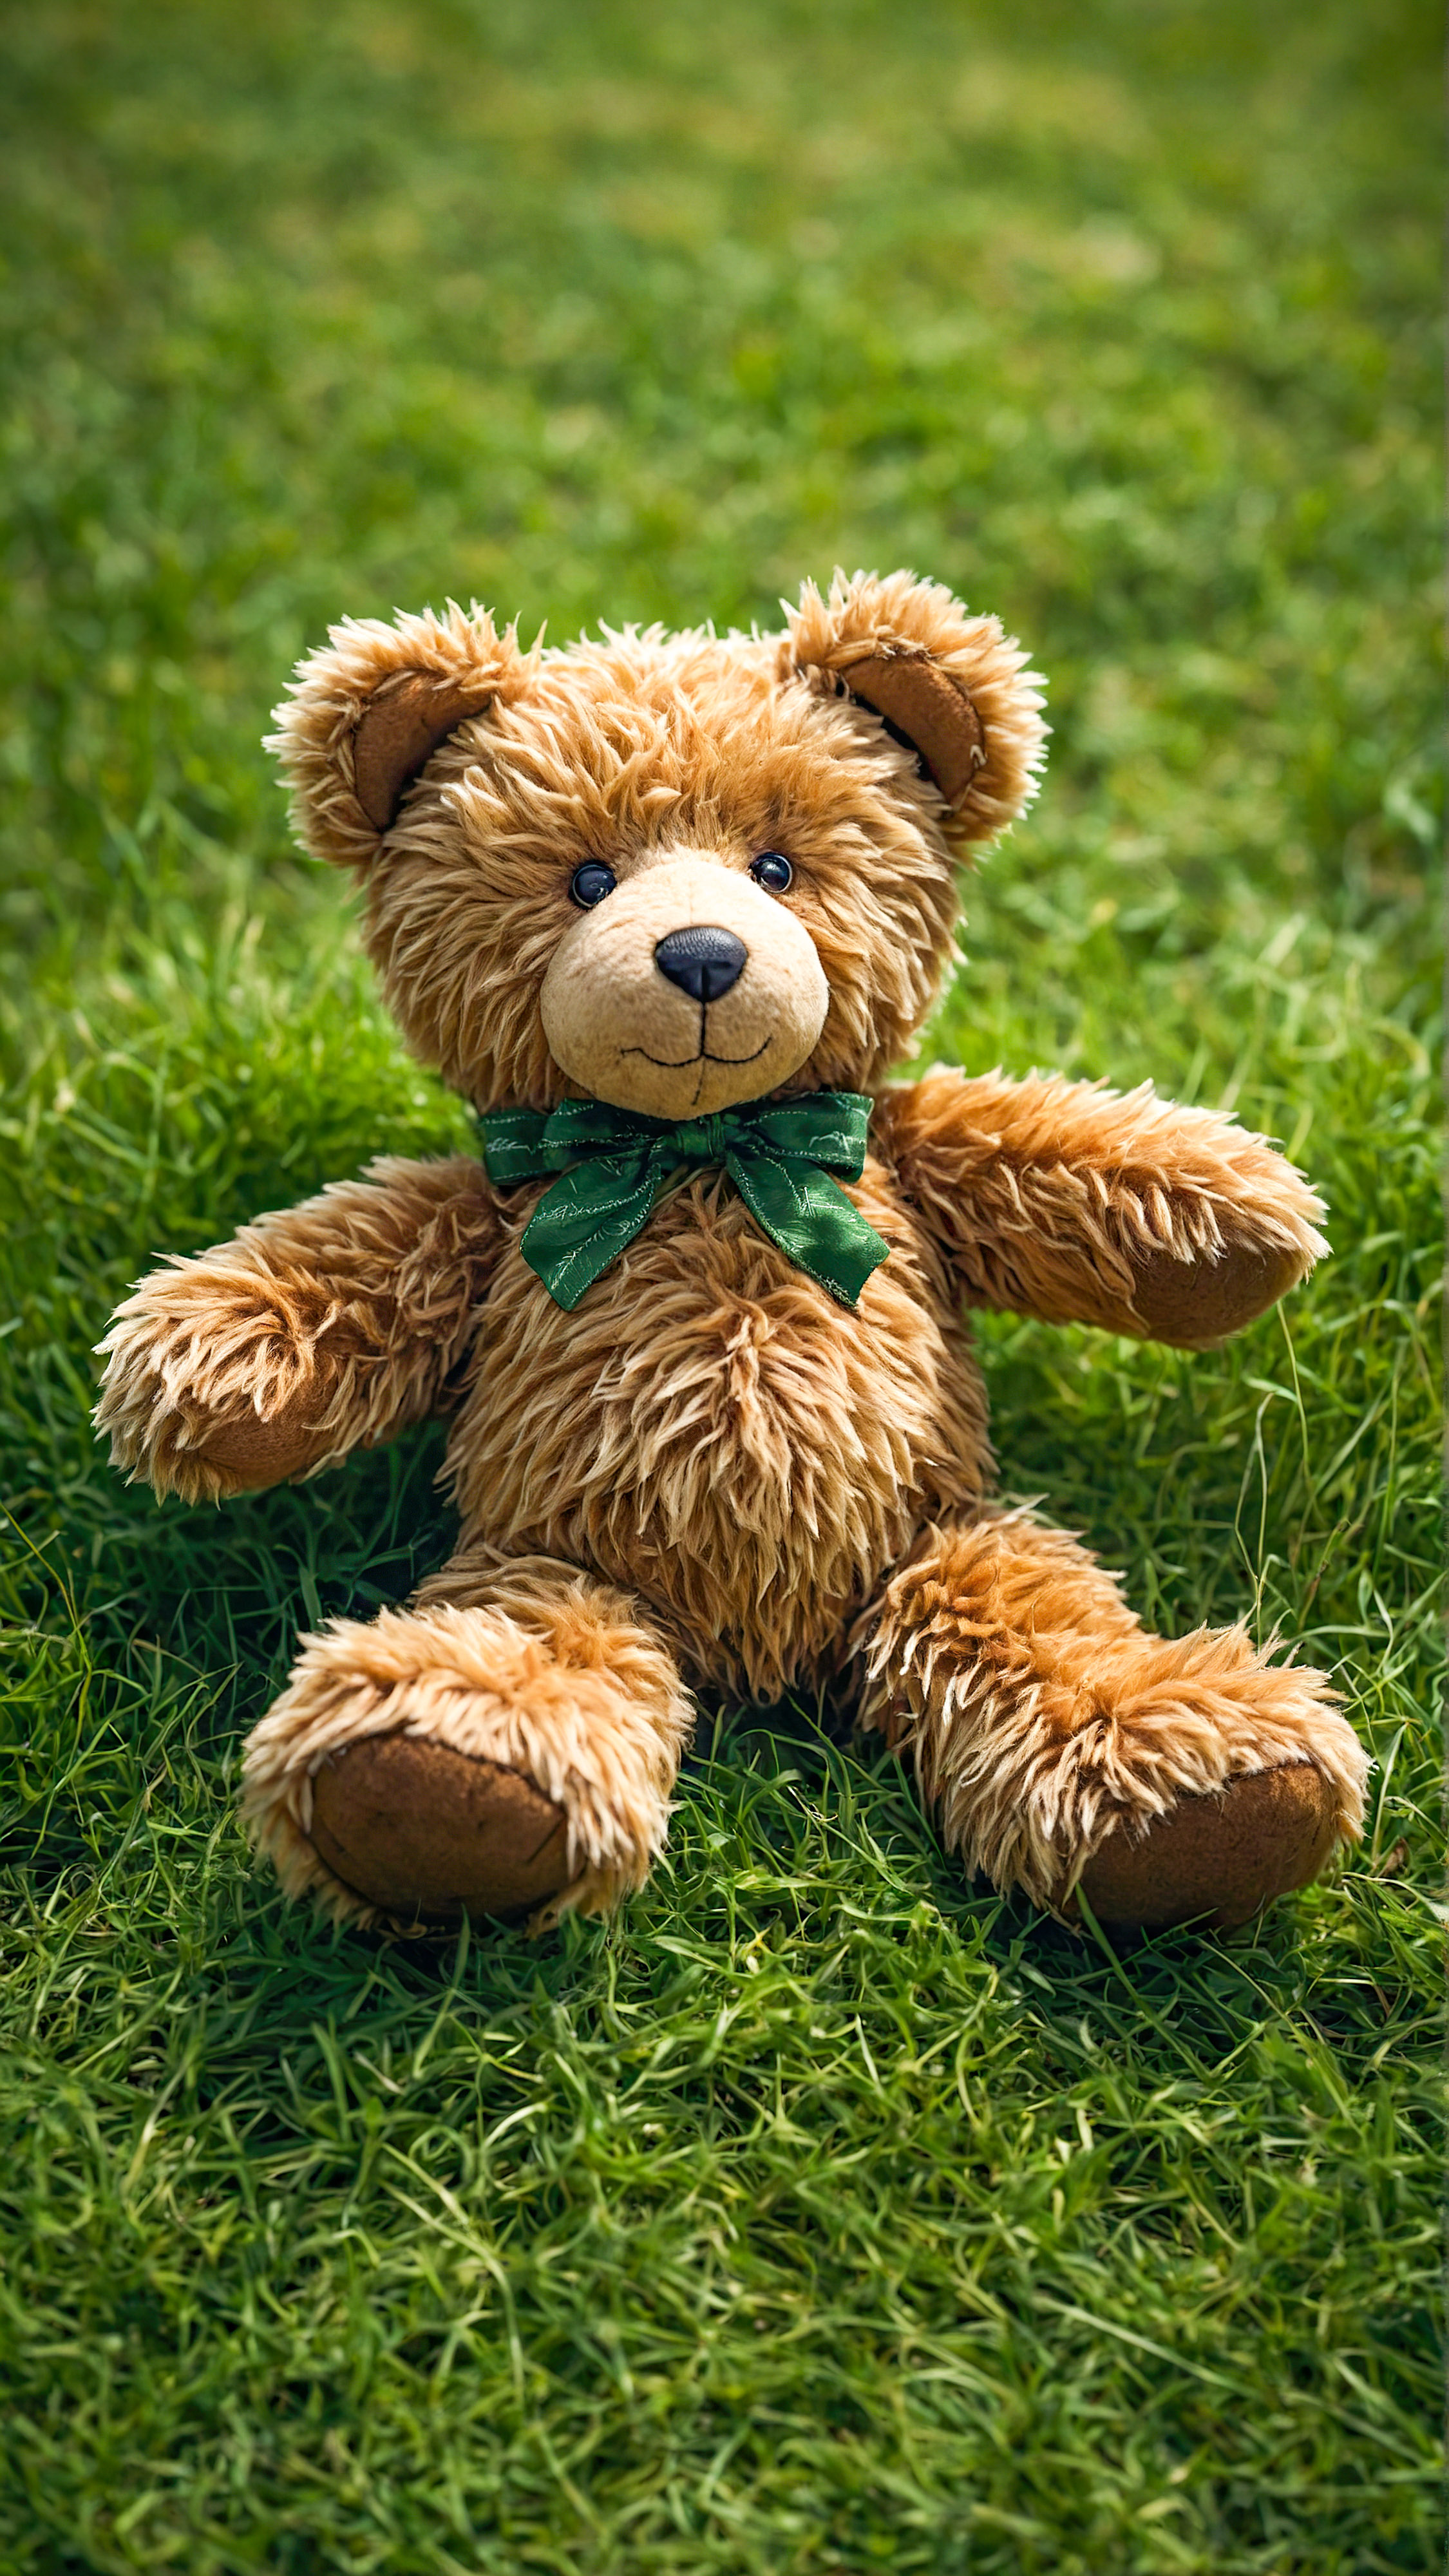 Ressentez une sensation de chaleur et de confort avec notre fond d'écran iPhone 4K cool gratuit, présentant un ours en peluche allongé sur une surface herbeuse verte vibrante, avec ses bras près de son visage.